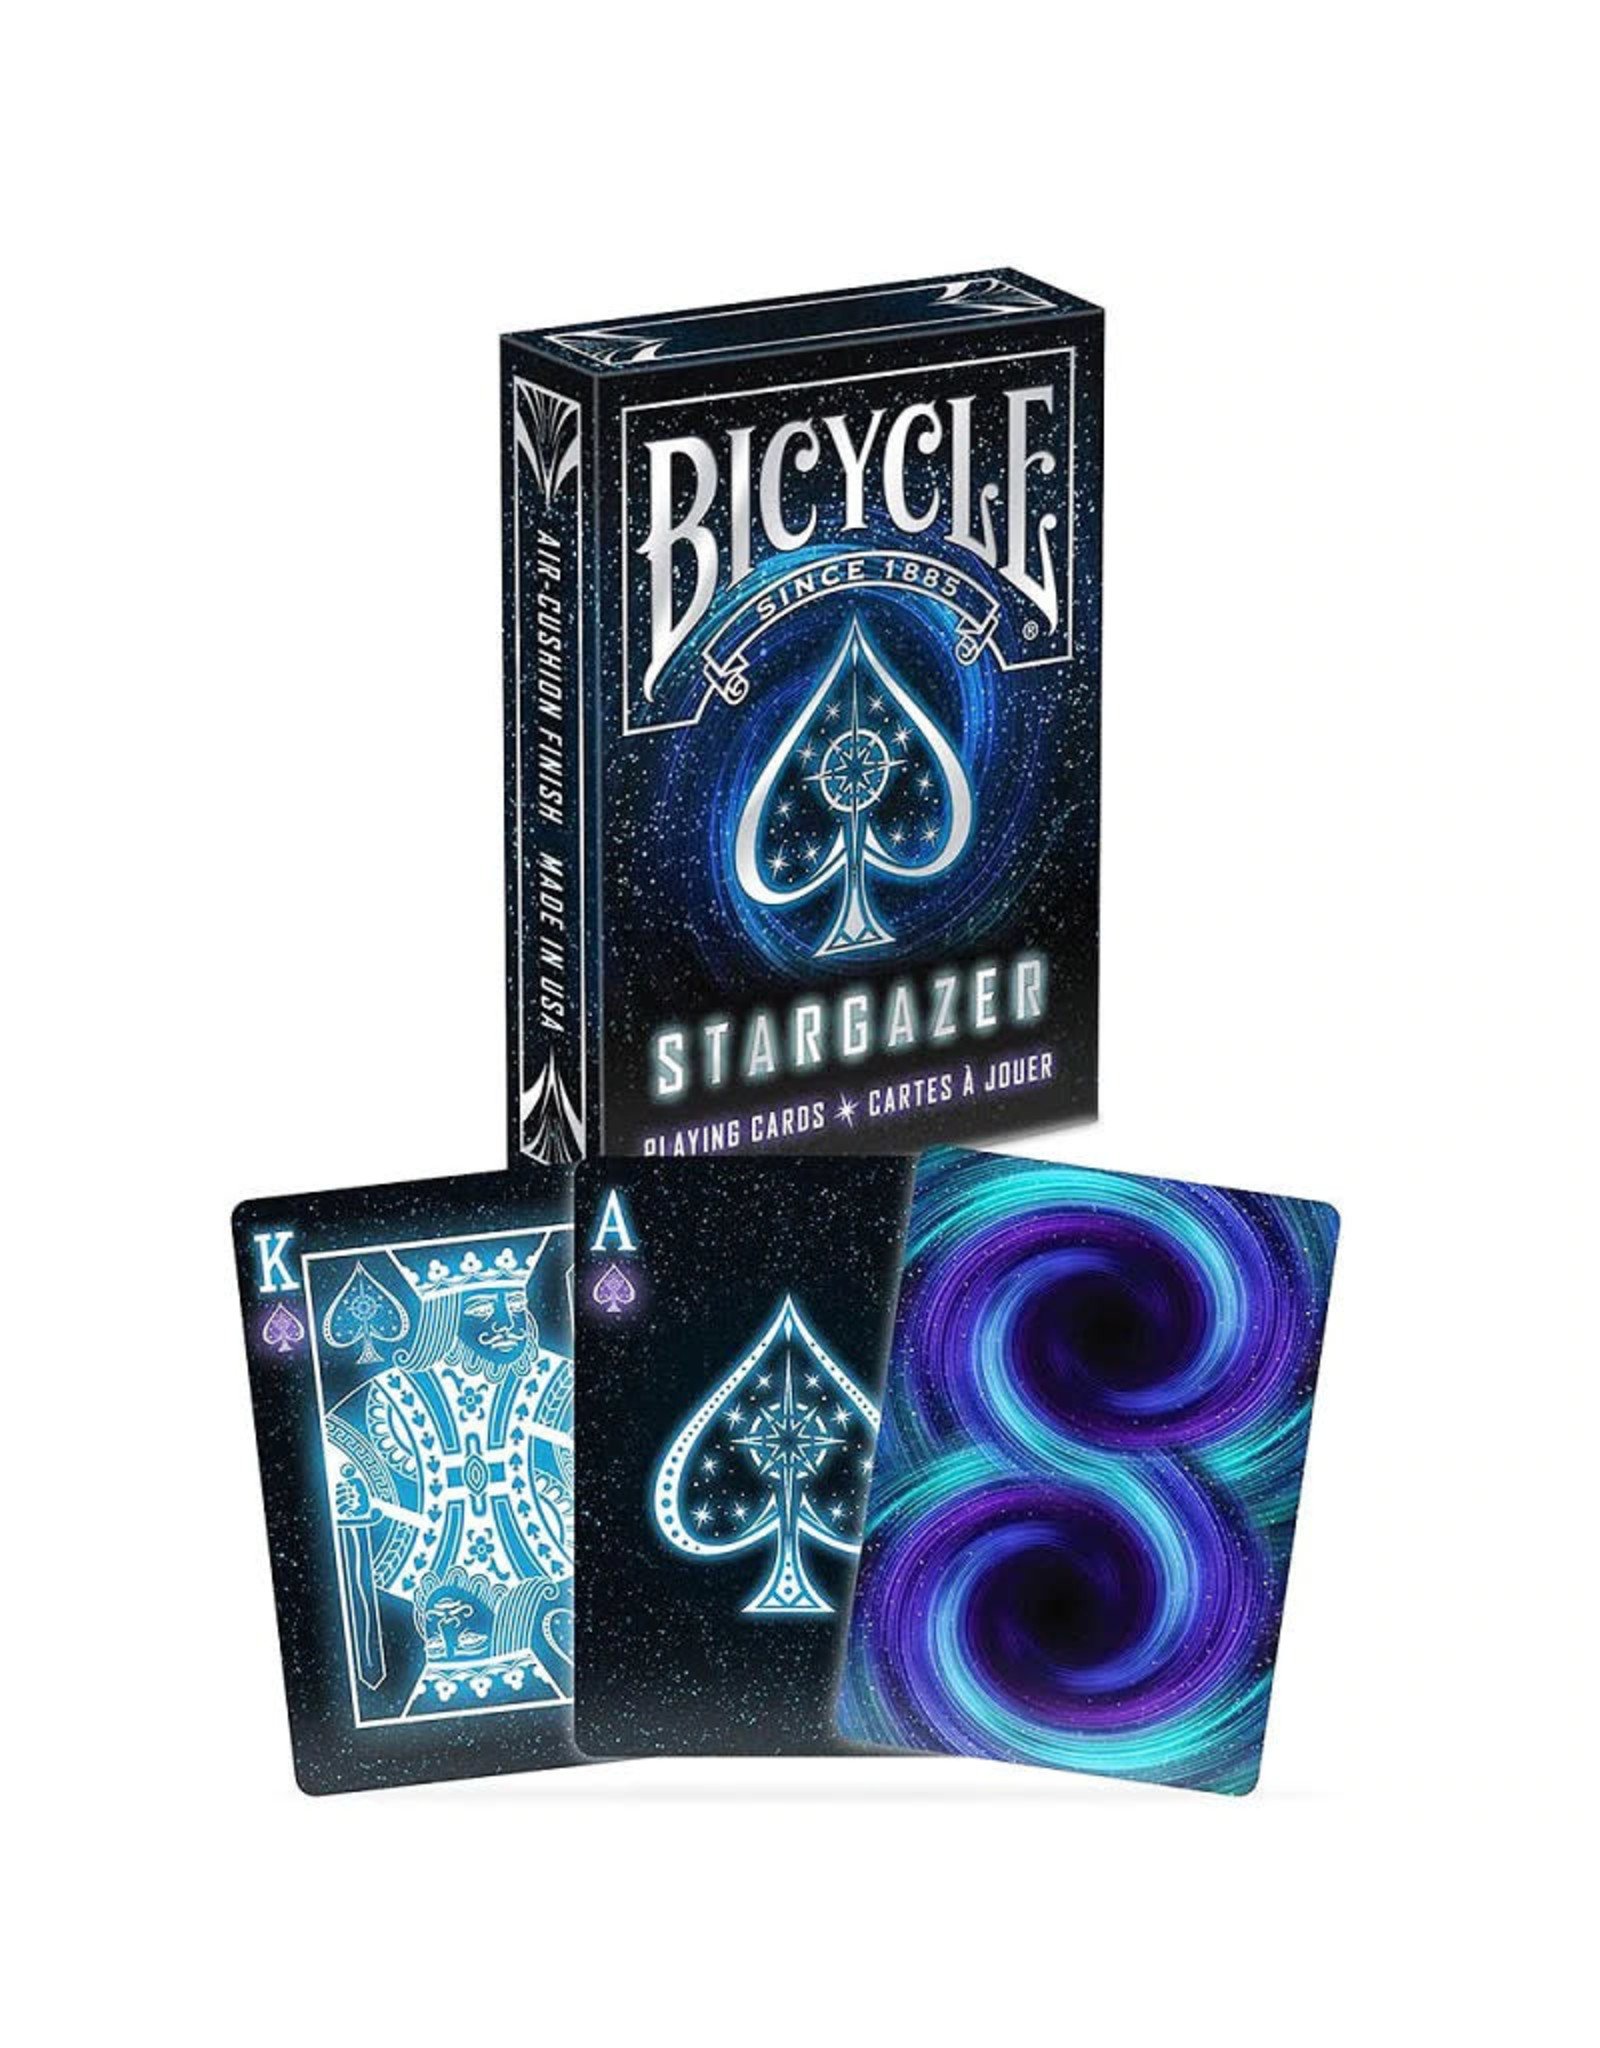 Bicycle Playing Cards (Stargazer)